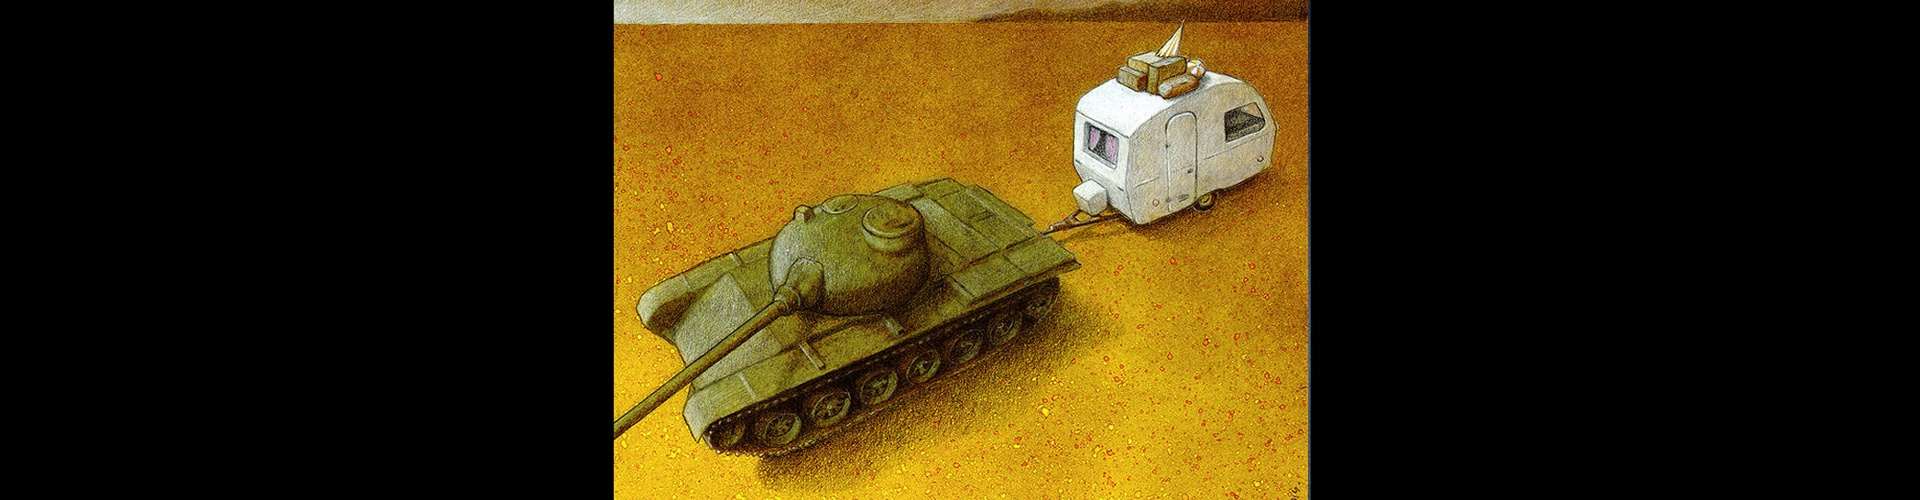 Gallery of Cartoon by Pawel Kuczynski-Poland part 2